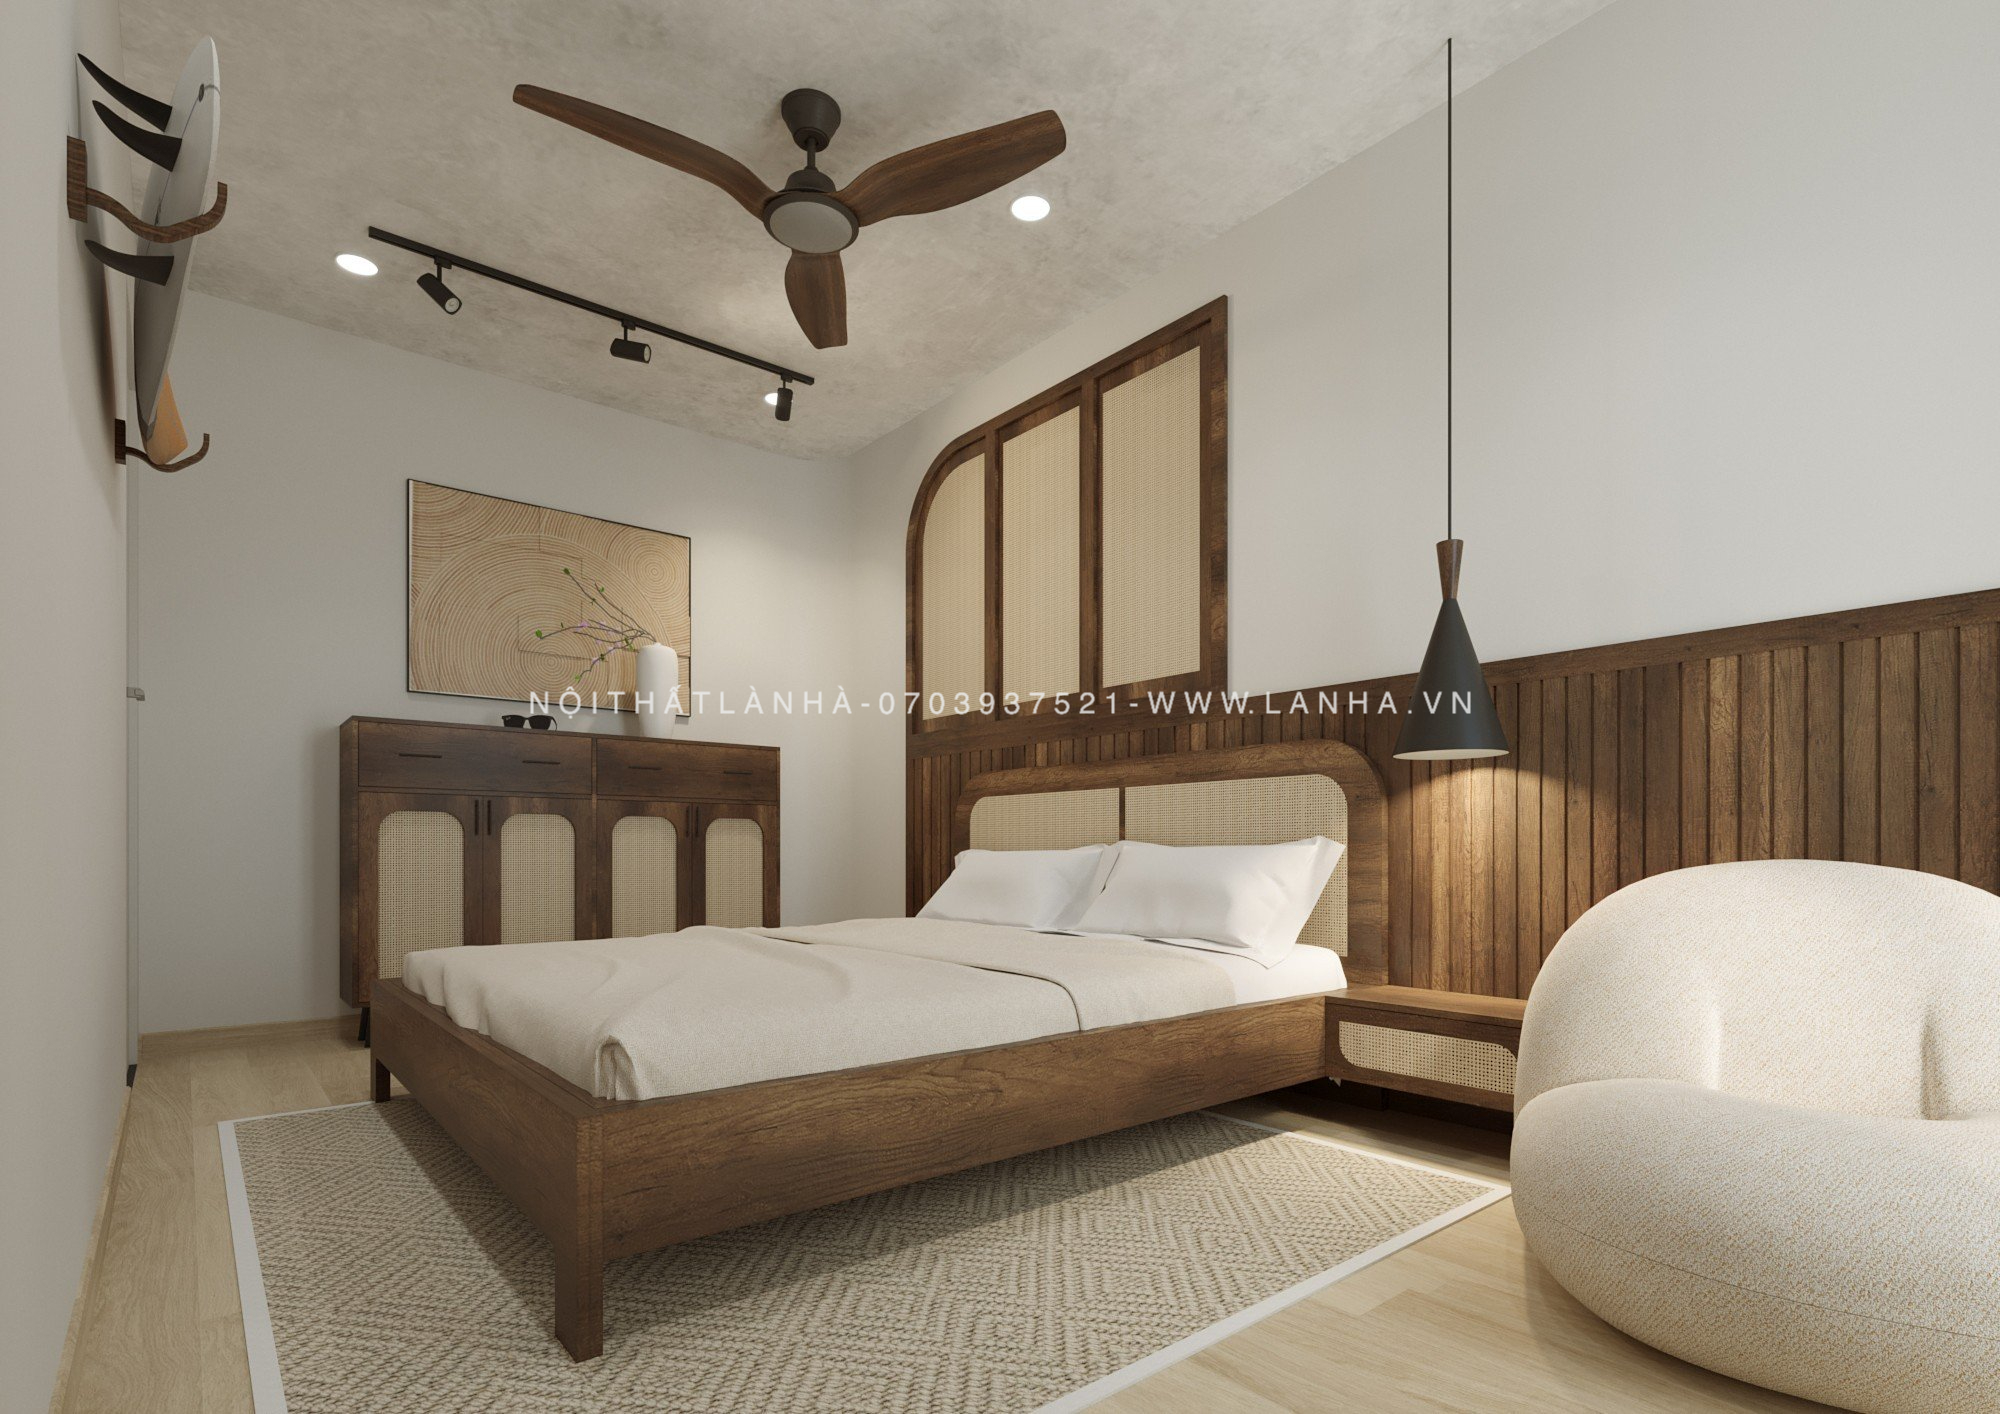 Thi công nội thất chung cư phòng ngủ màu gỗ đậm nổi bật kết hợp cùng các chi tiết đan lát tre nứa